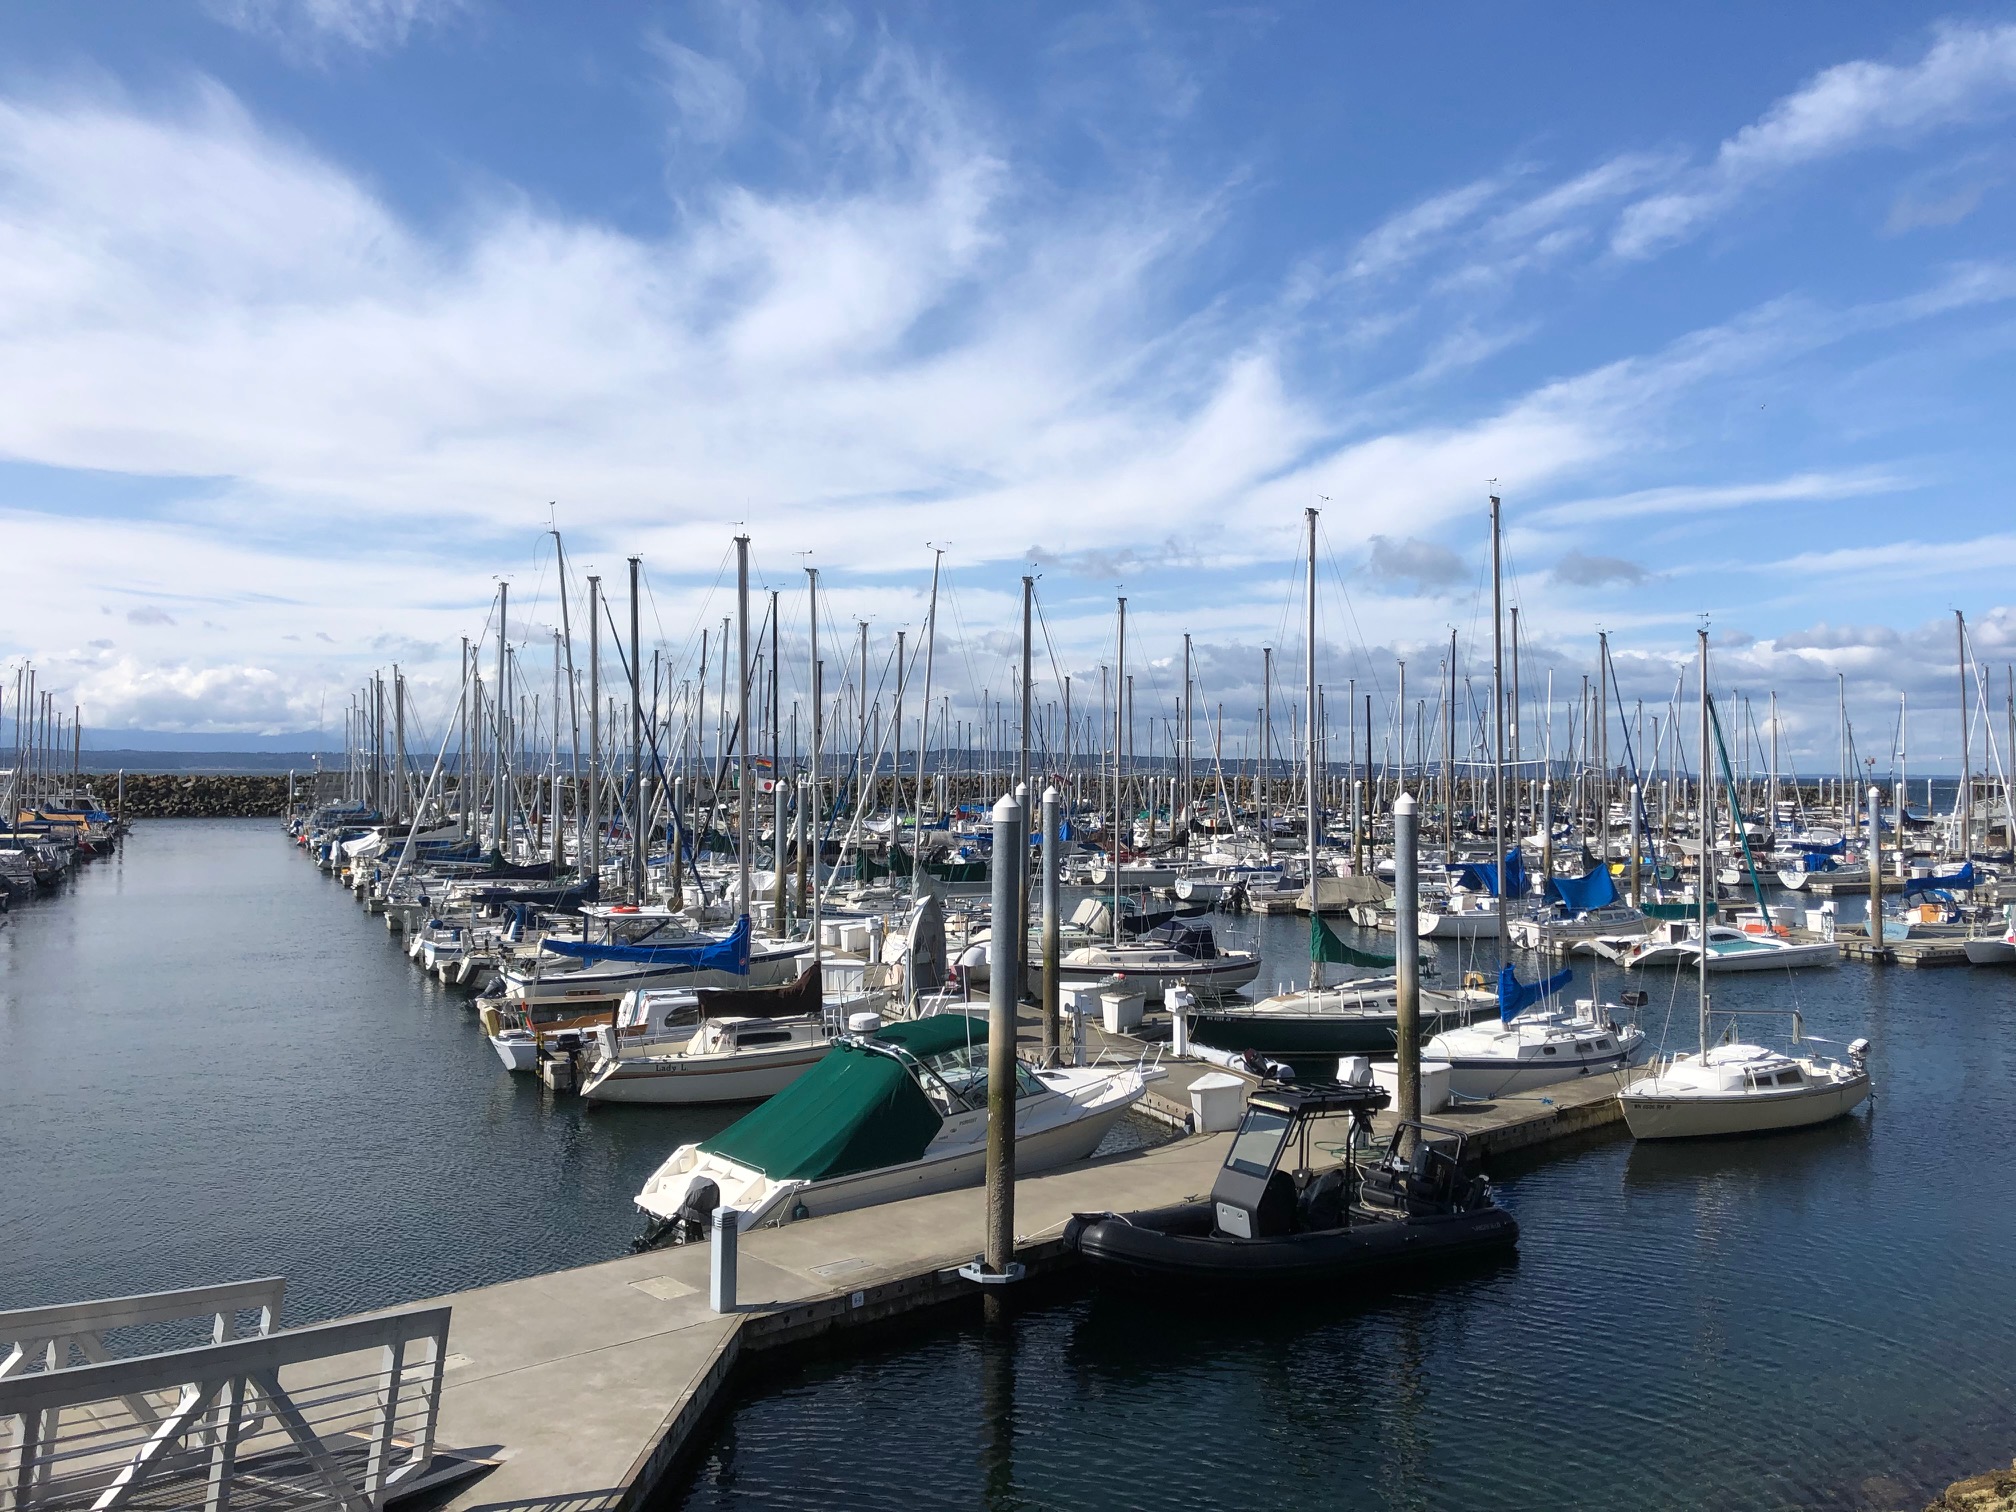 Marina with sailboats